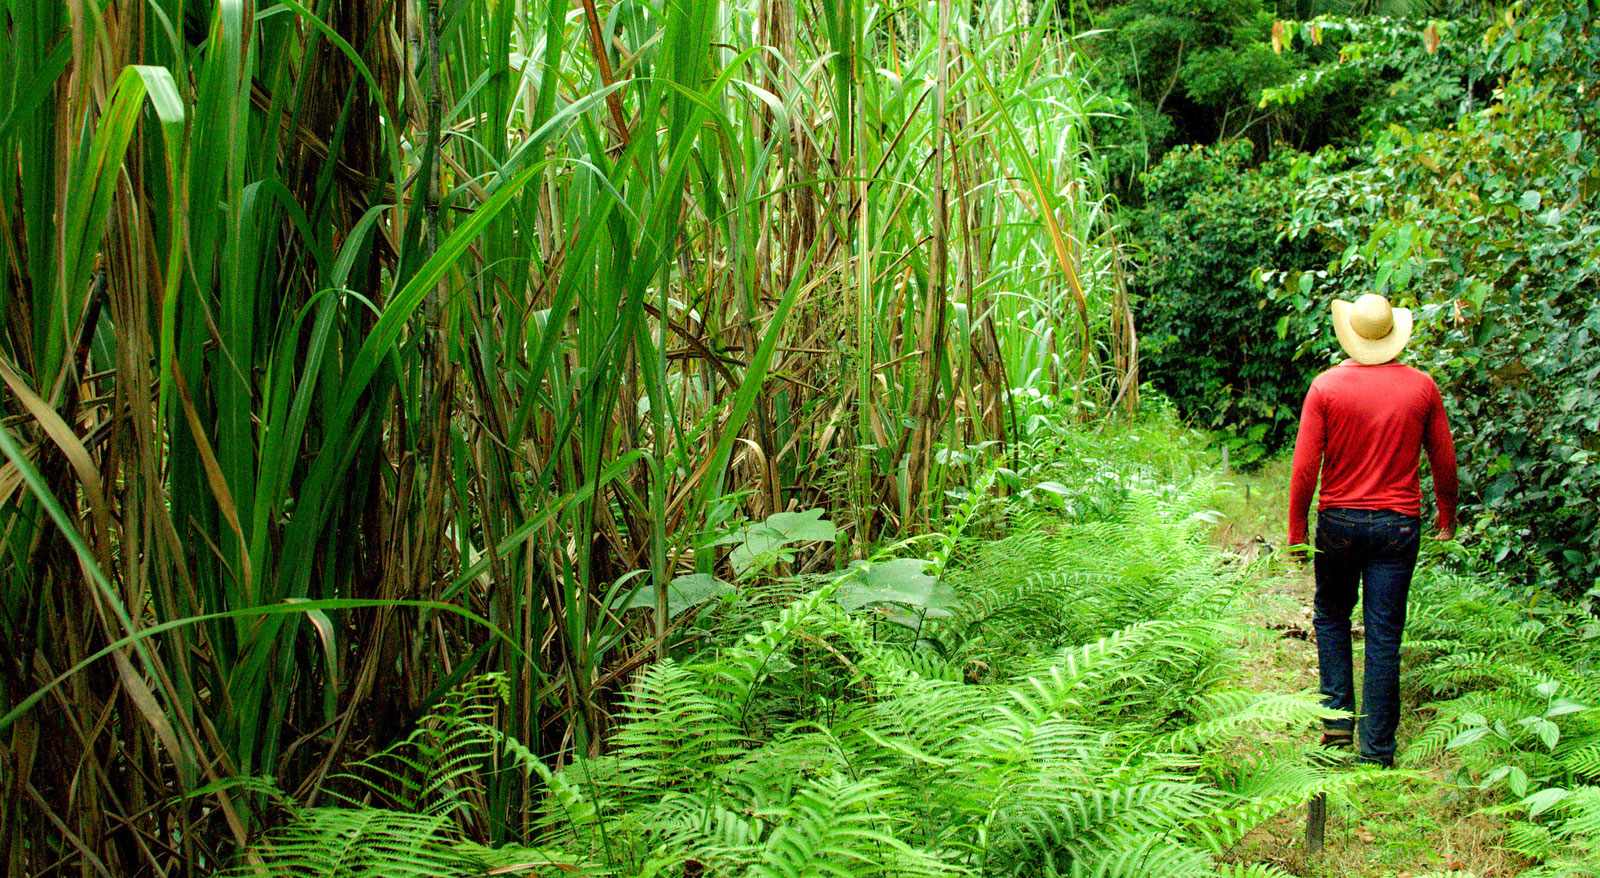 Сахарный тростник сбор. Сахарный тростник в Бразилии. Растение Индии сахарный тростник. Плантации сахарного тростника в Бразилии. Плантация сахарного тростника в Индии.